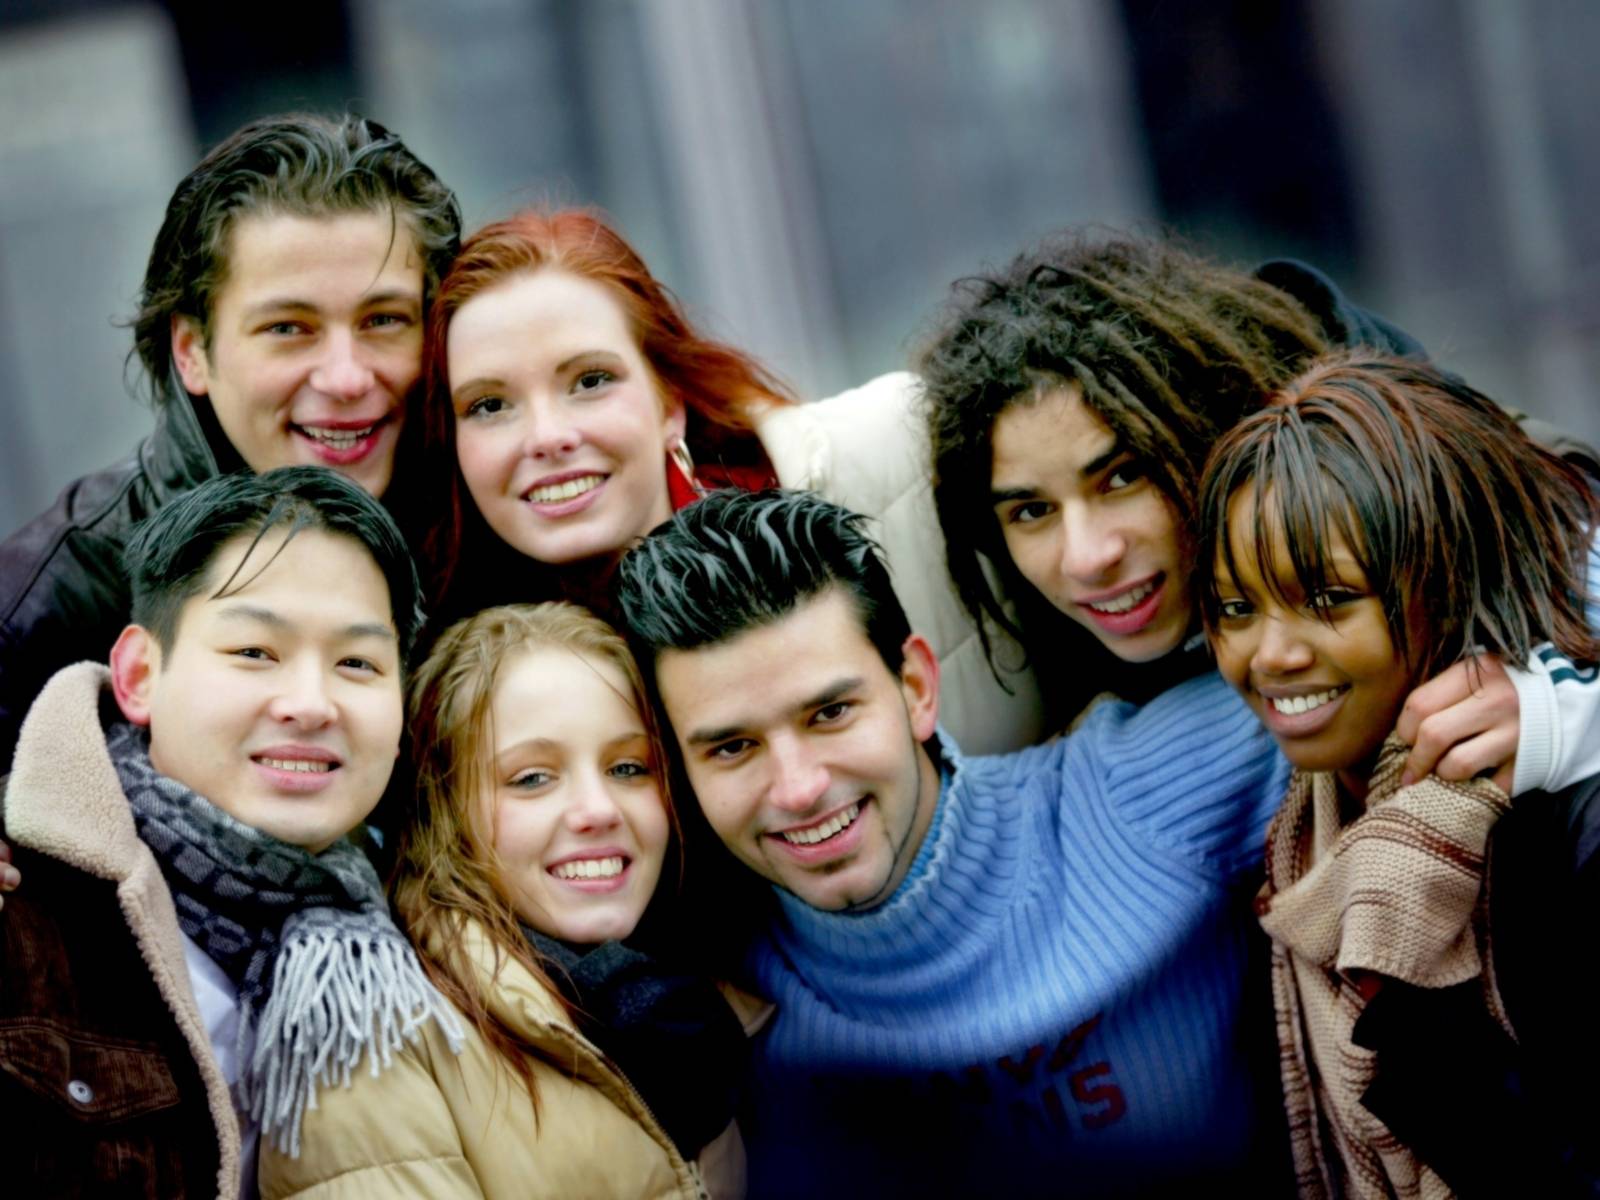 Jugendliche aus verschiedenen Ländern posieren für ein Gruppenfoto.